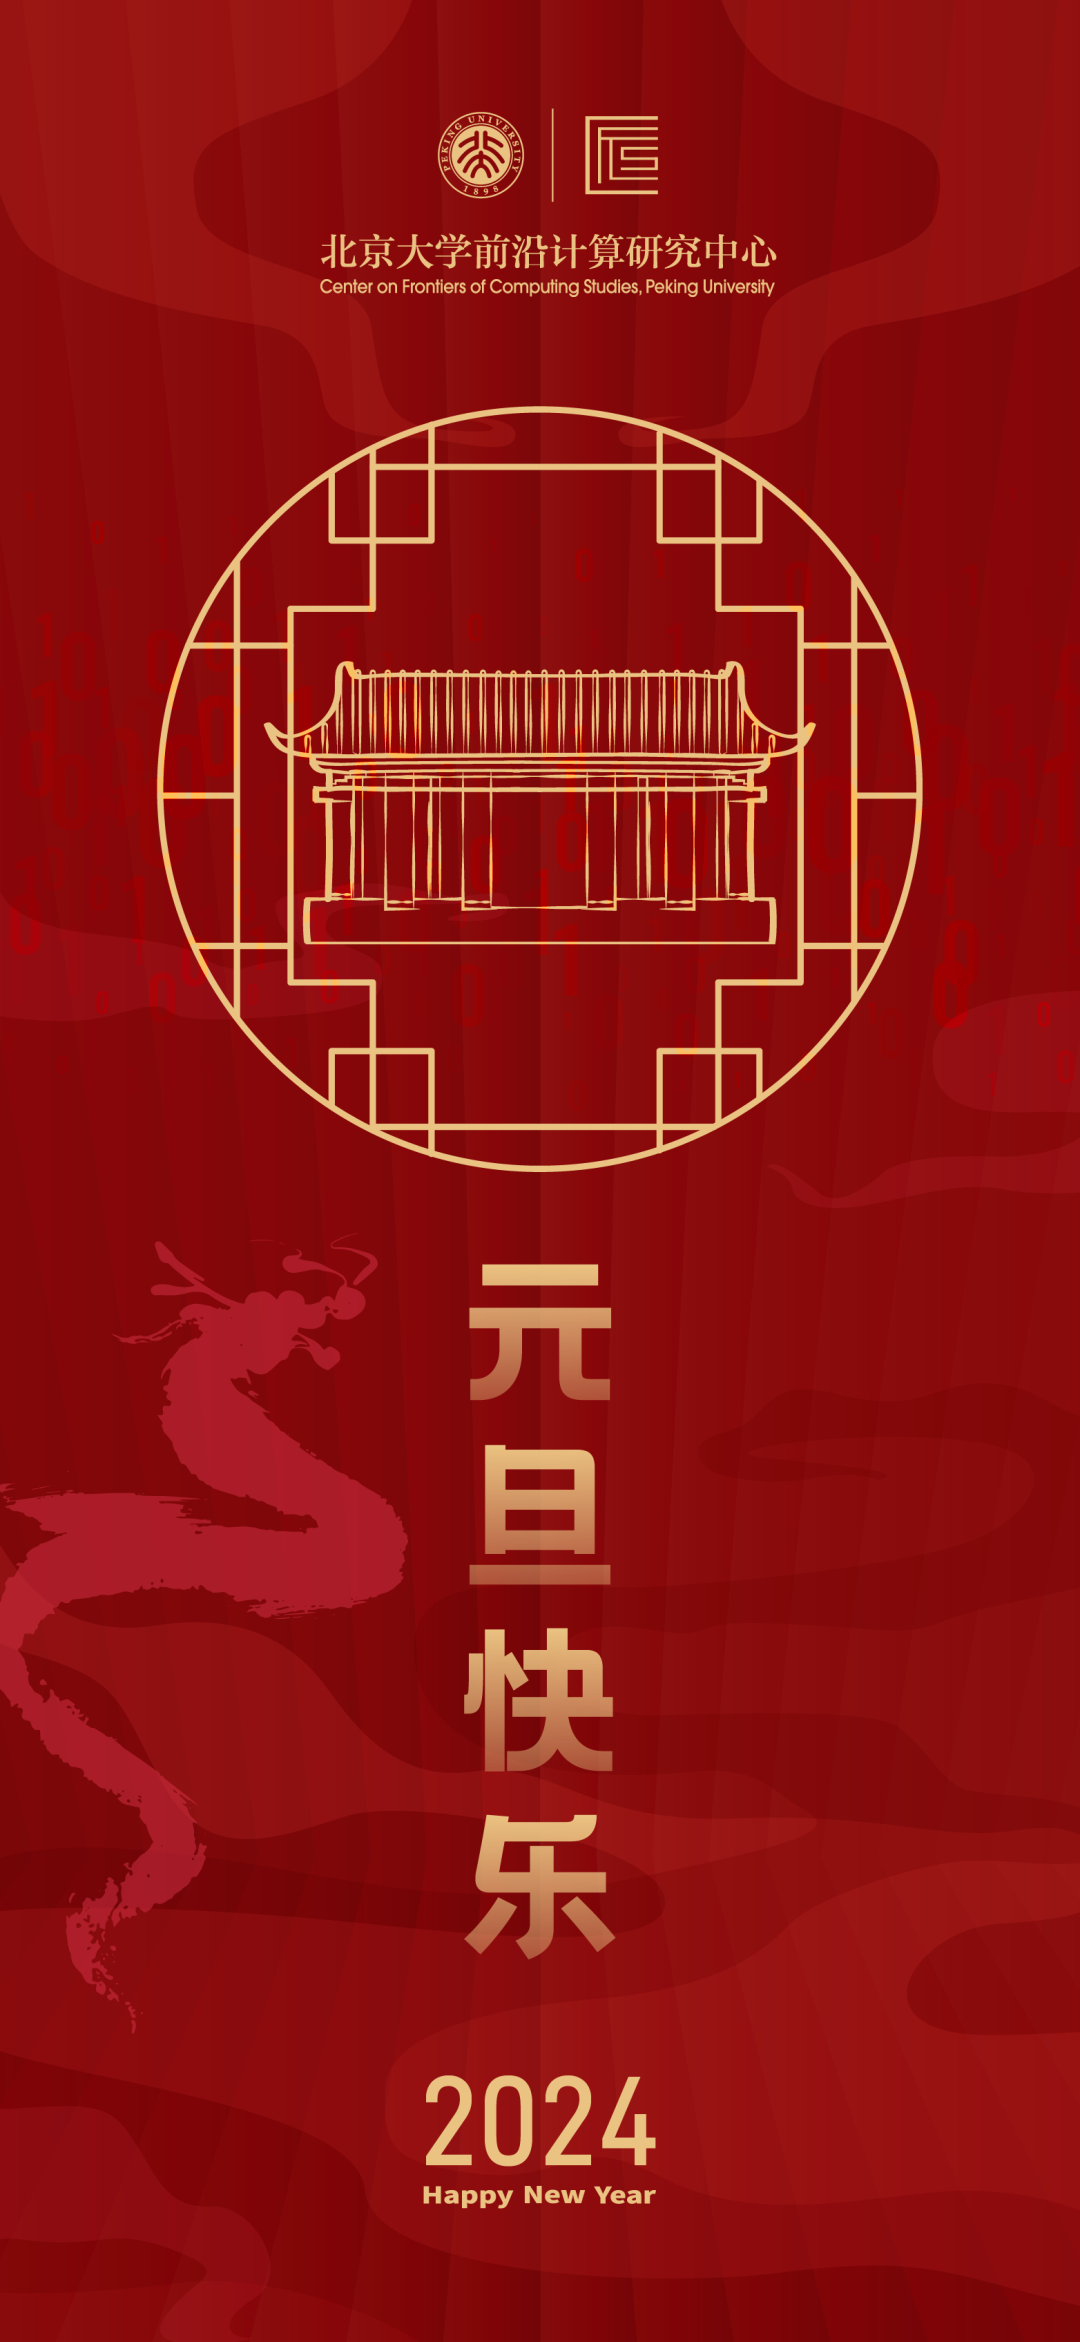 2024 | 北京大学前沿计算研究中心祝您新年快乐！